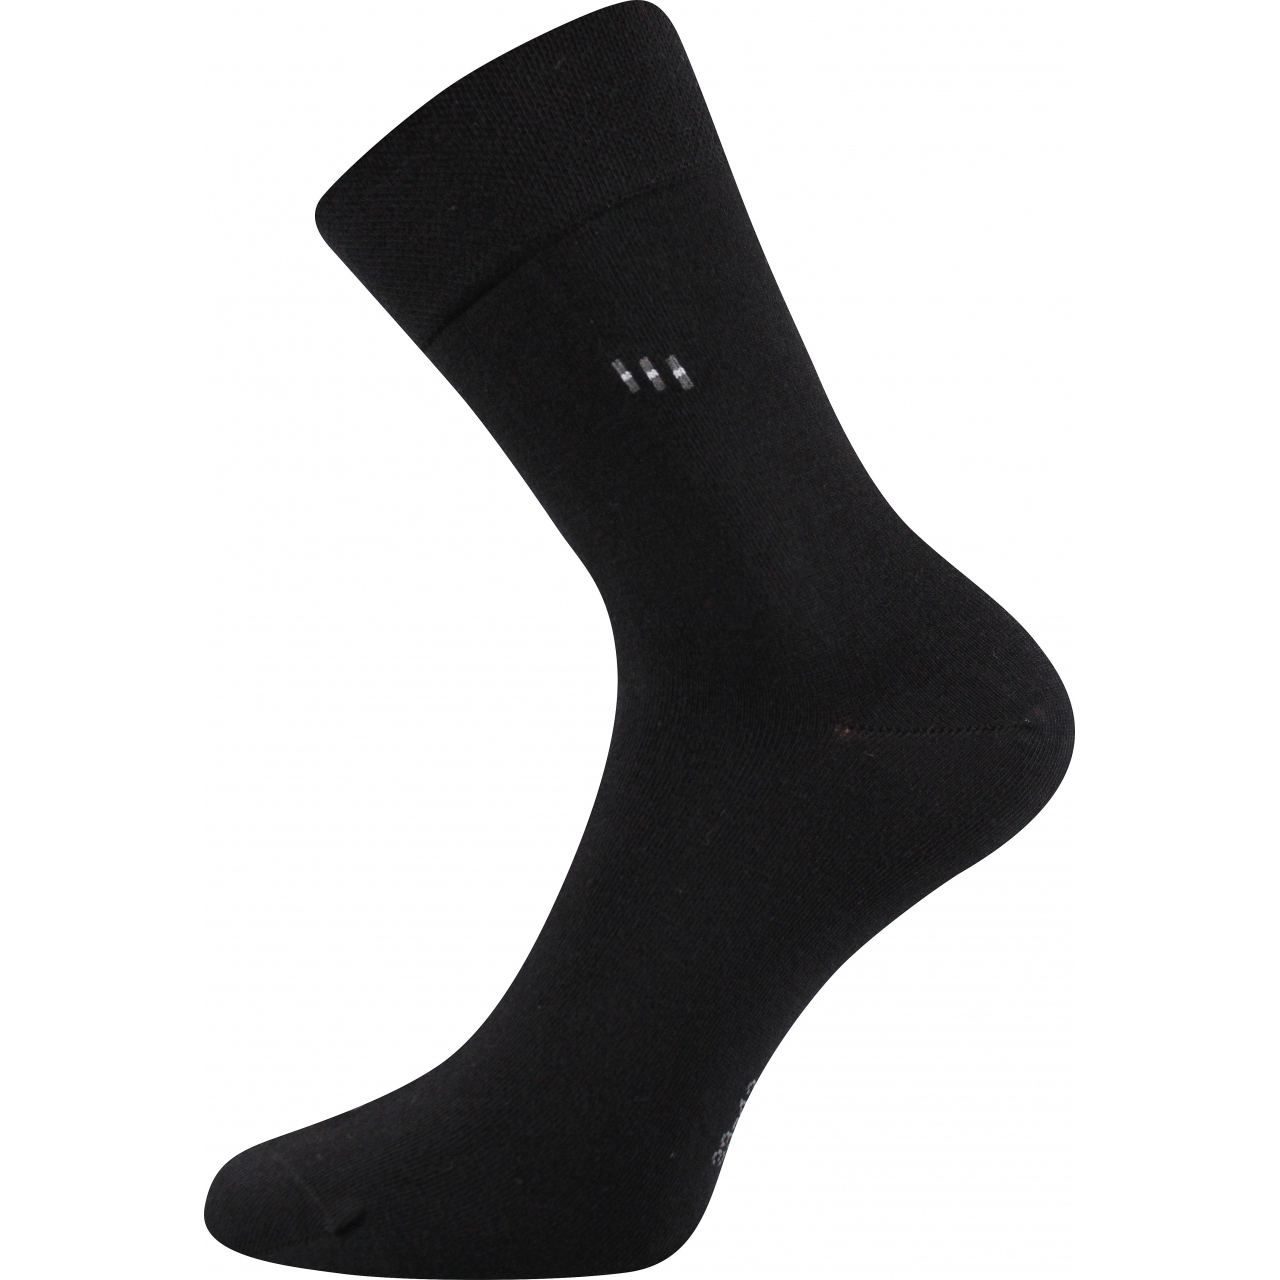 Ponožky pánské společenské Lonka Dipool - černé, 39-42